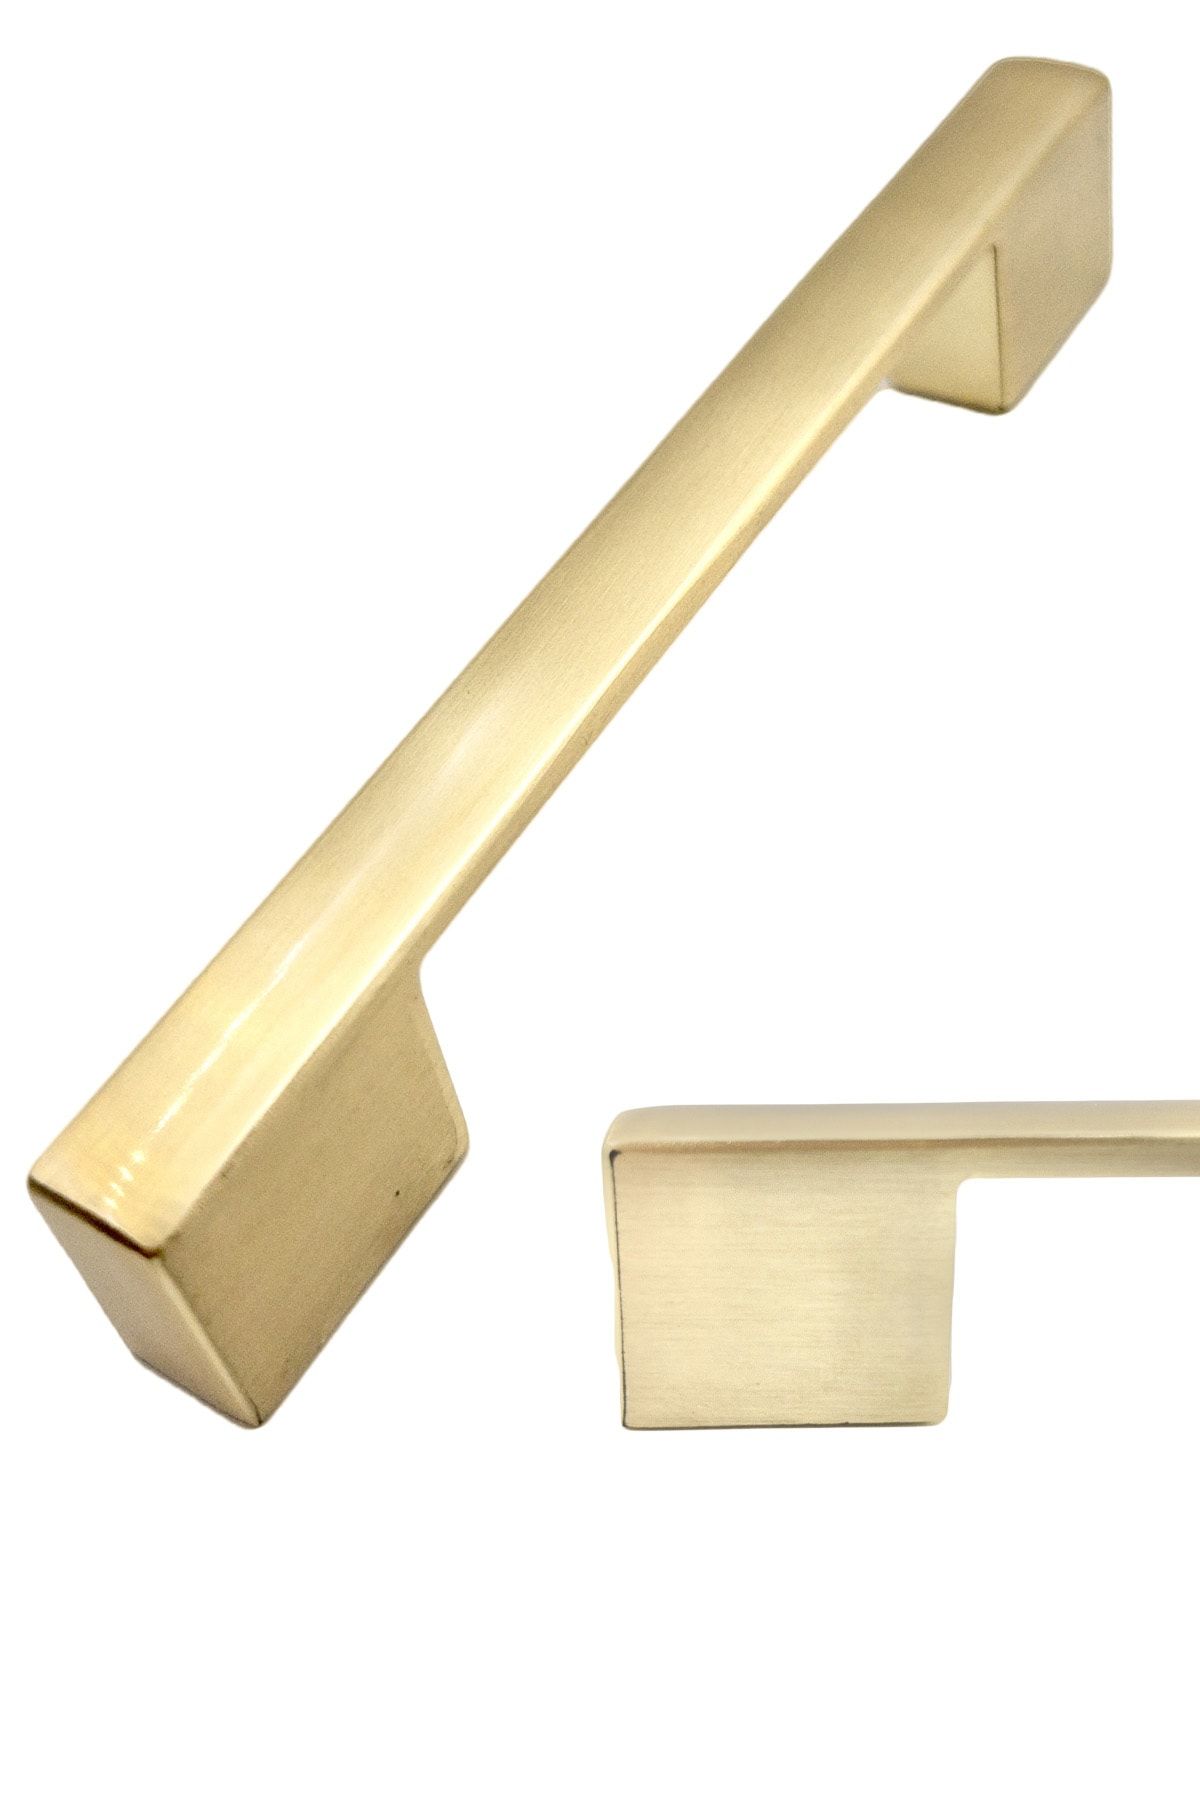 bablife Kale Nergis Köprü 160 mm-192 mm Mat Altın Metal Lüks Çekmece Dolap Mobilya Kulpları